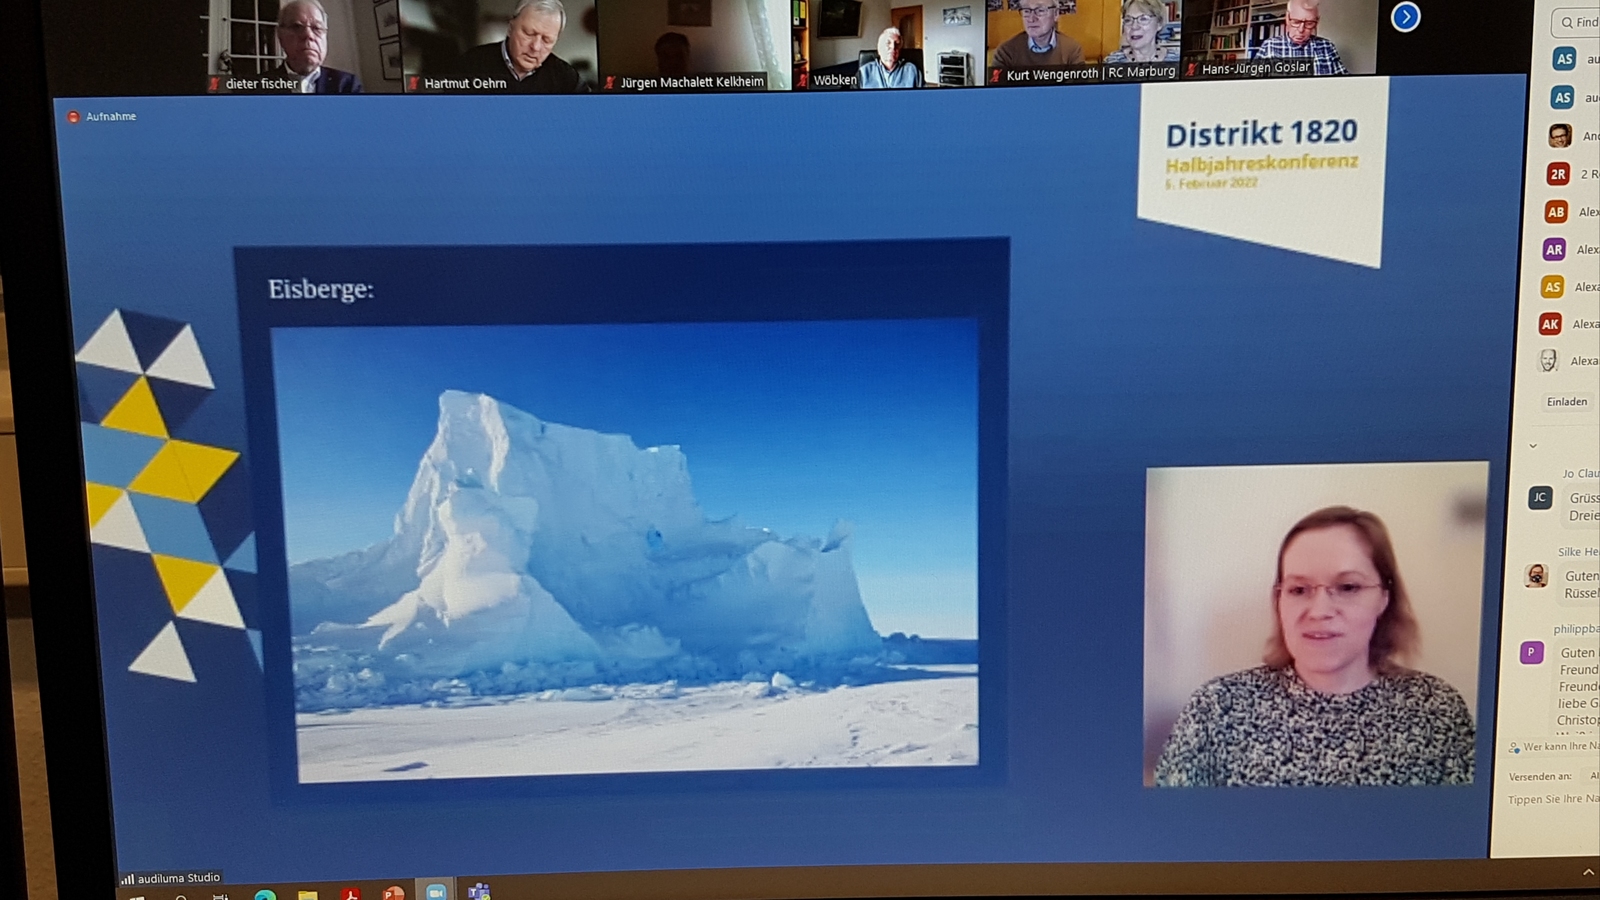 2022, eisberg, antarktis, d1820, halbjahreskonferenz